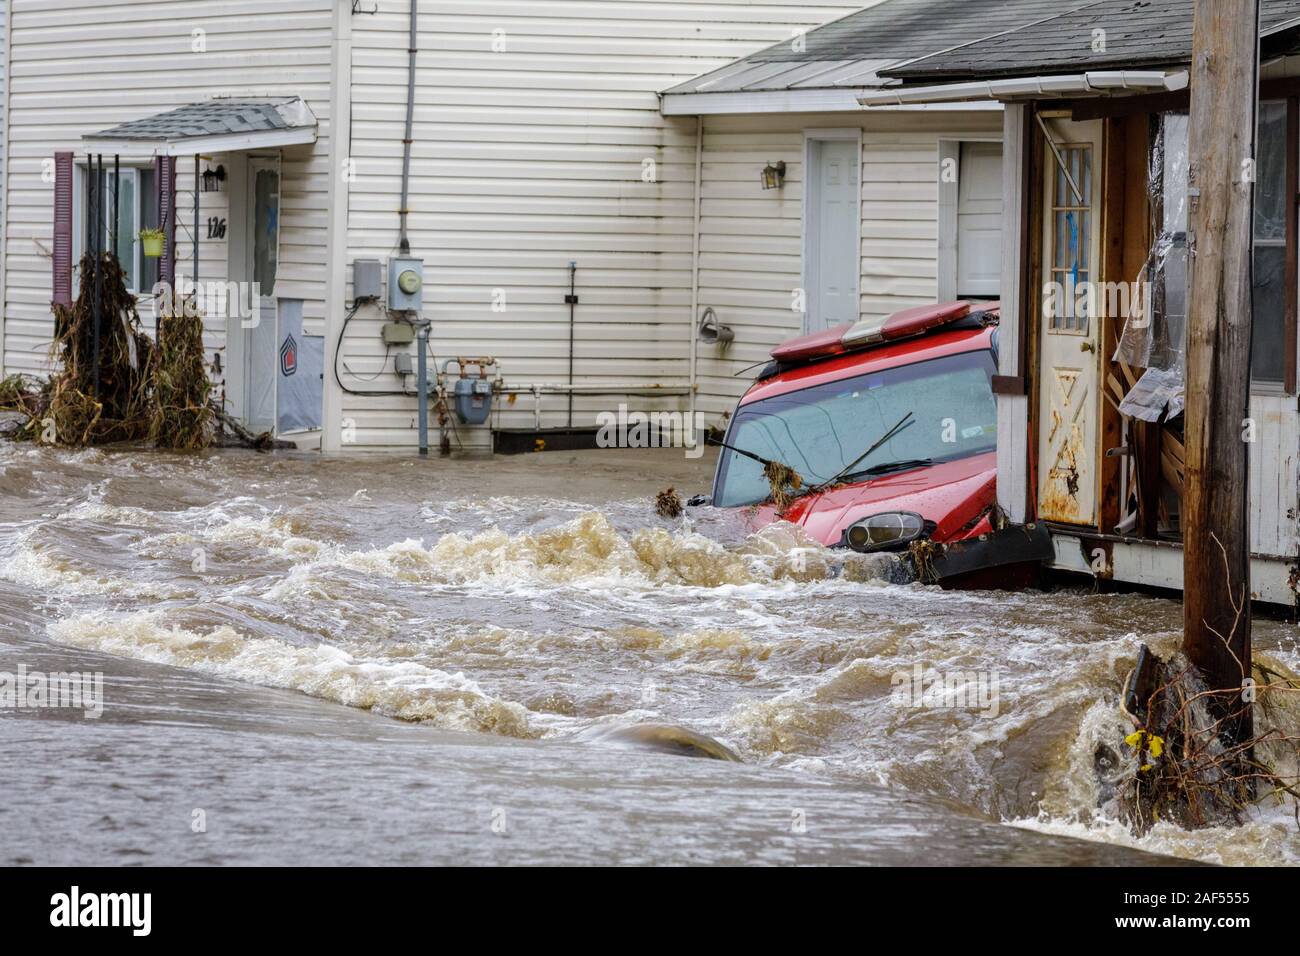 1 Novembre 2019: inondazioni nel villaggio di Dolgeville, Herkimer County, New York, Stati Uniti d'America. Una vita è stata persa, Dolgeville è stata dichiarata un'area di disastro. Foto Stock